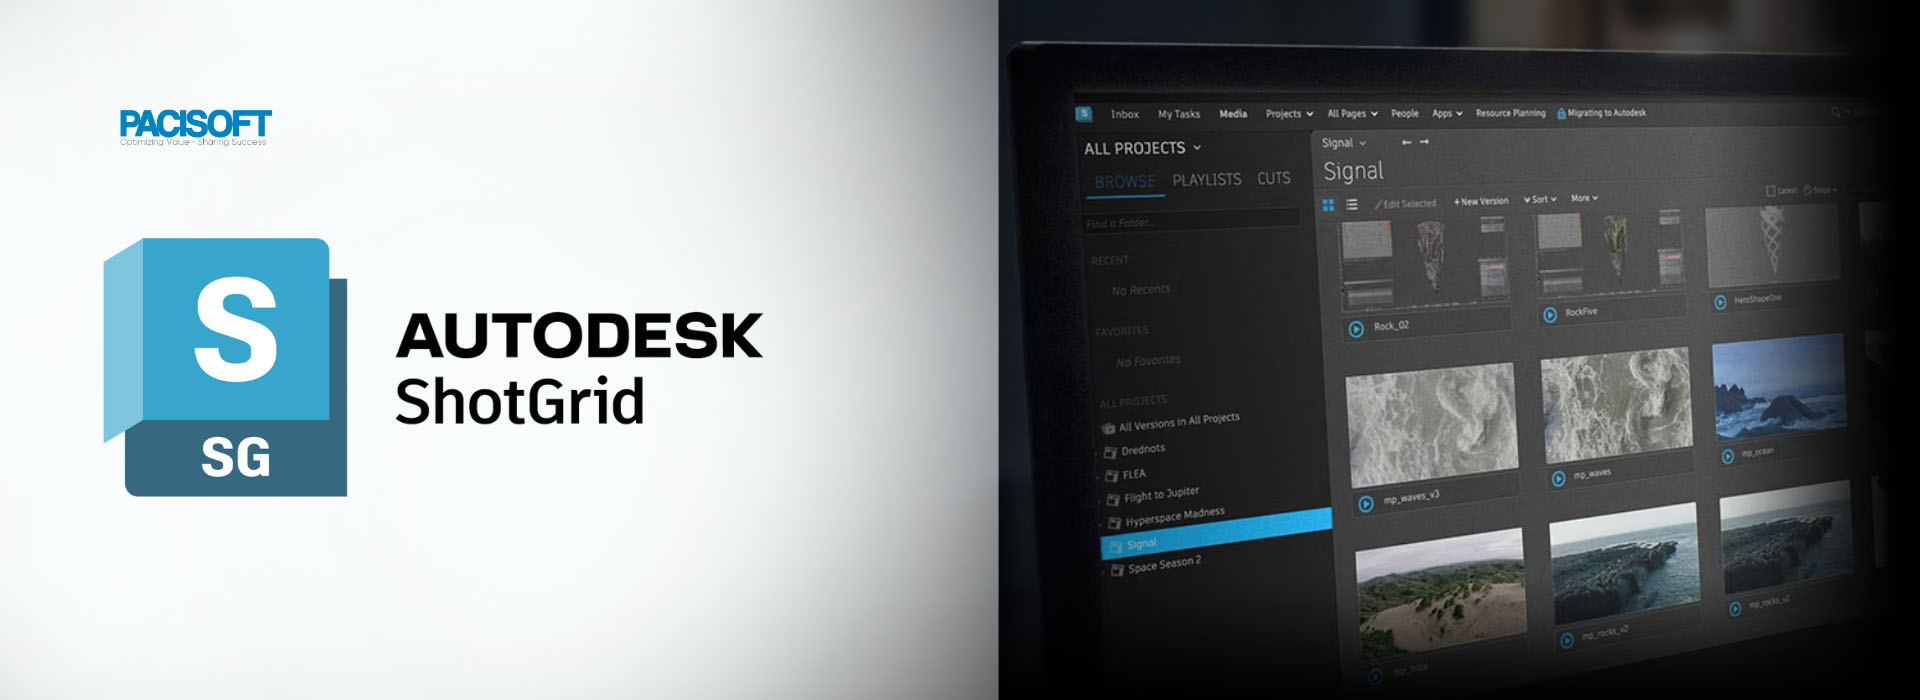 Thử ngay Autodesk ShotGrid | Phần mềm với những tính năng ưu việt về Games, Films